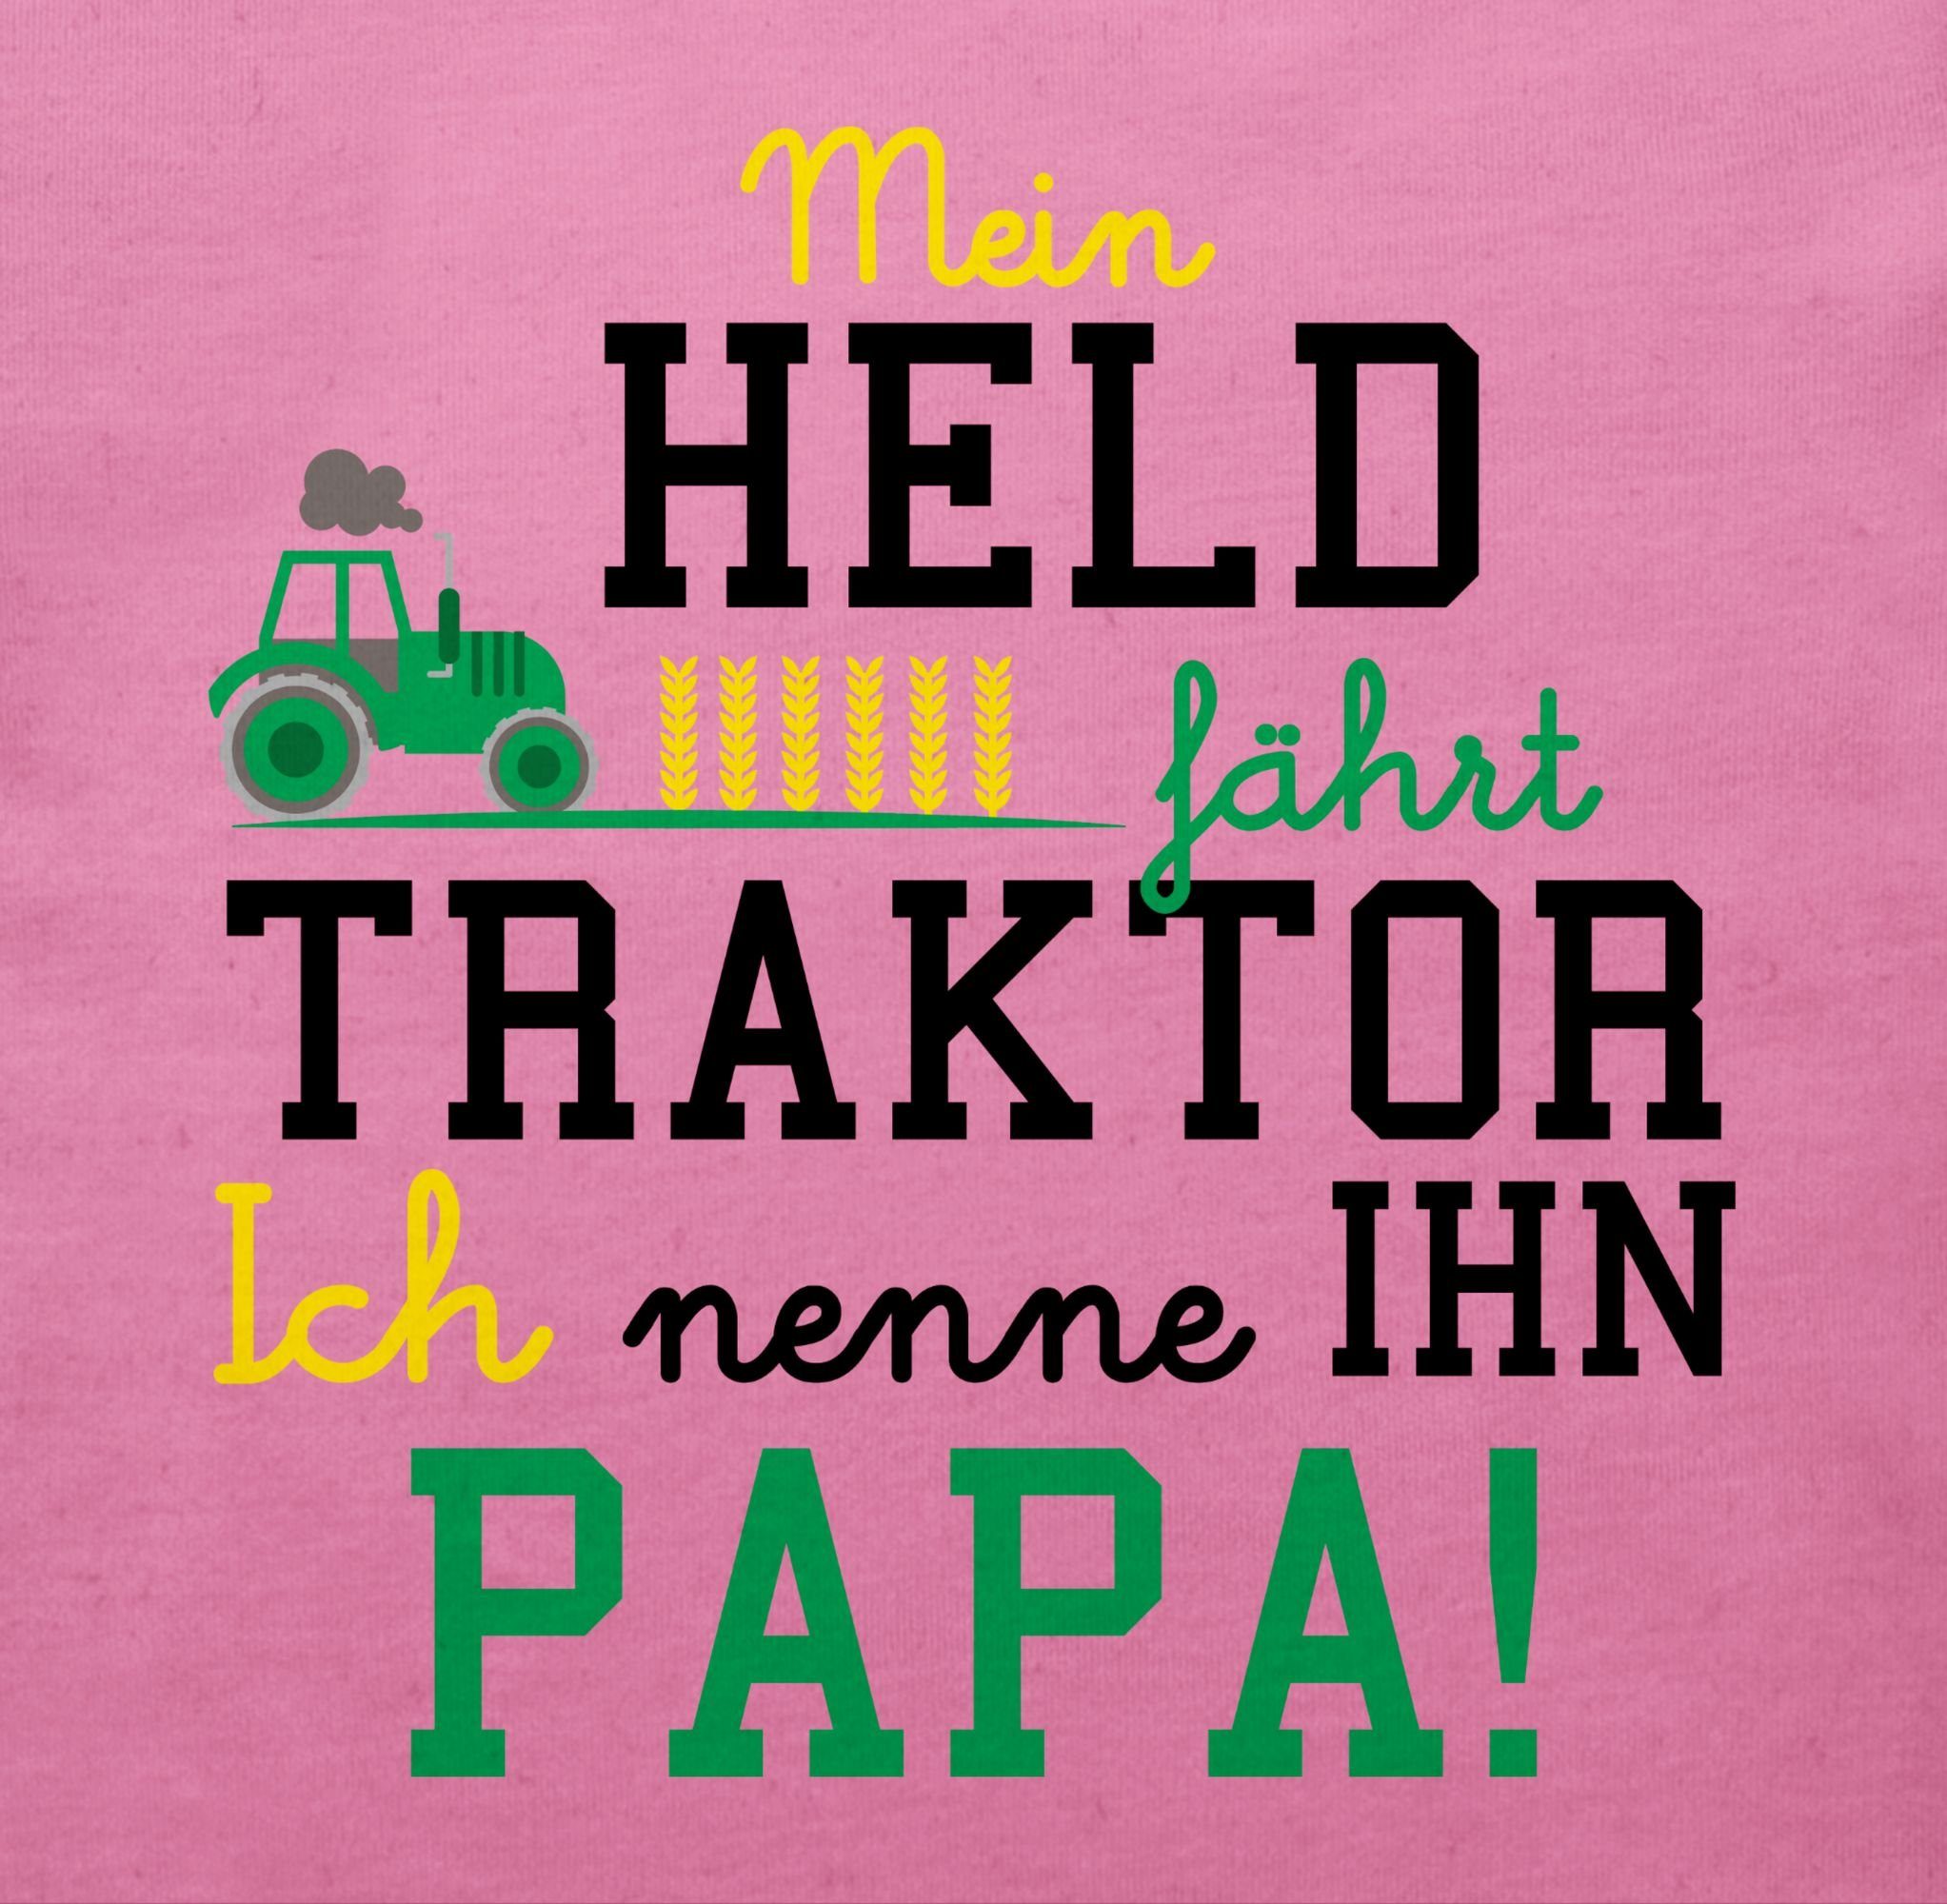 Traktor Traktor Shirtracer Pink T-Shirt 2 Held Mein fährt